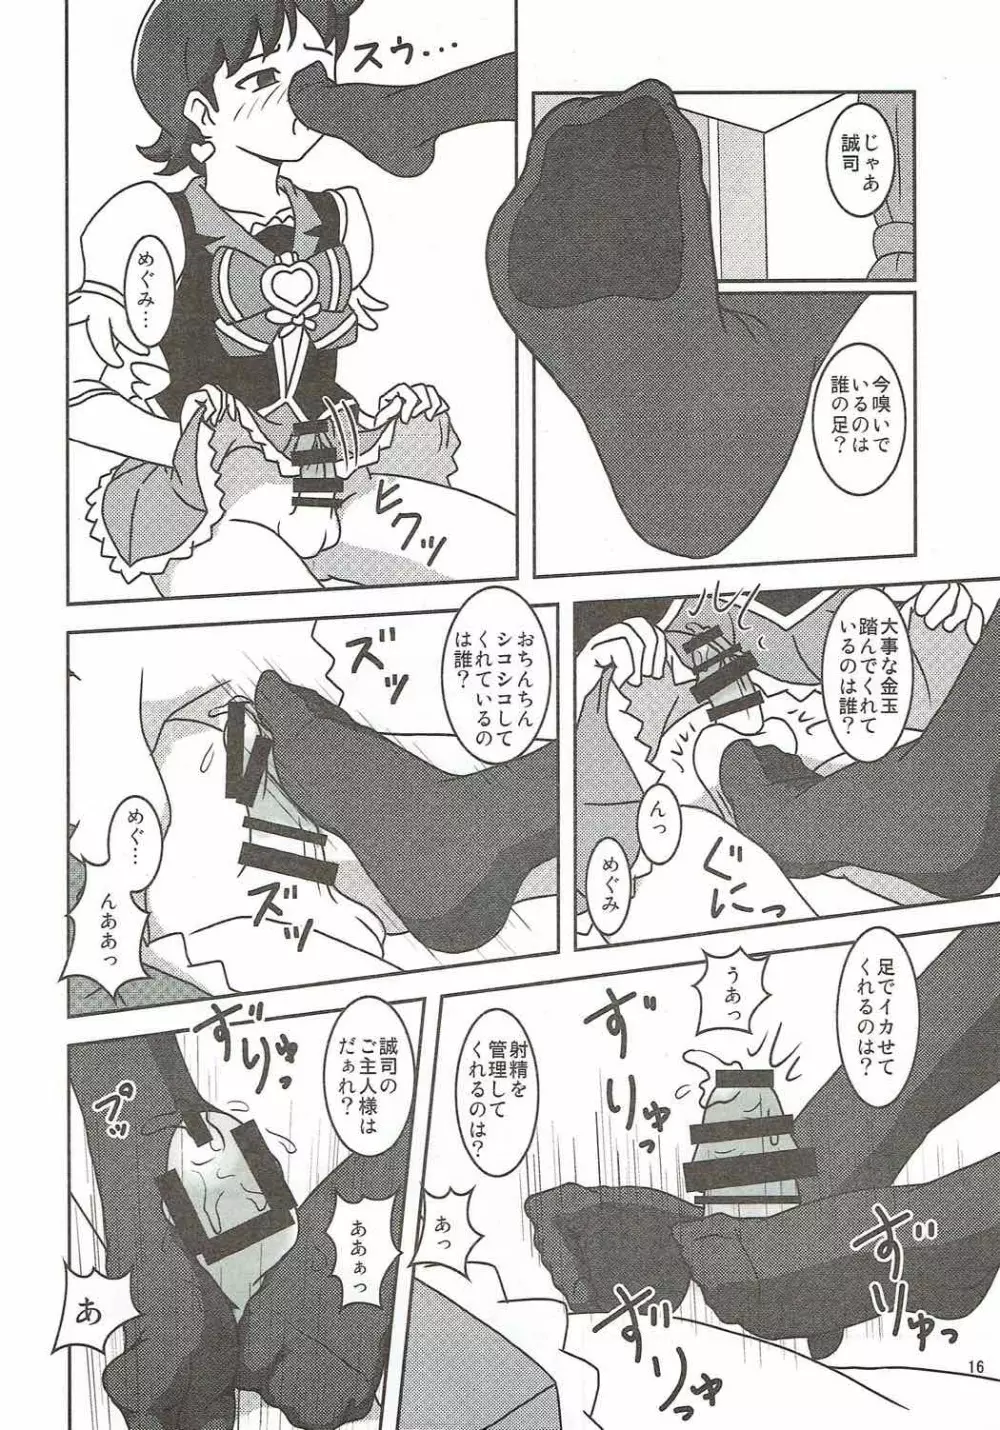 ハピネスチャージズリキュア!2 - page17